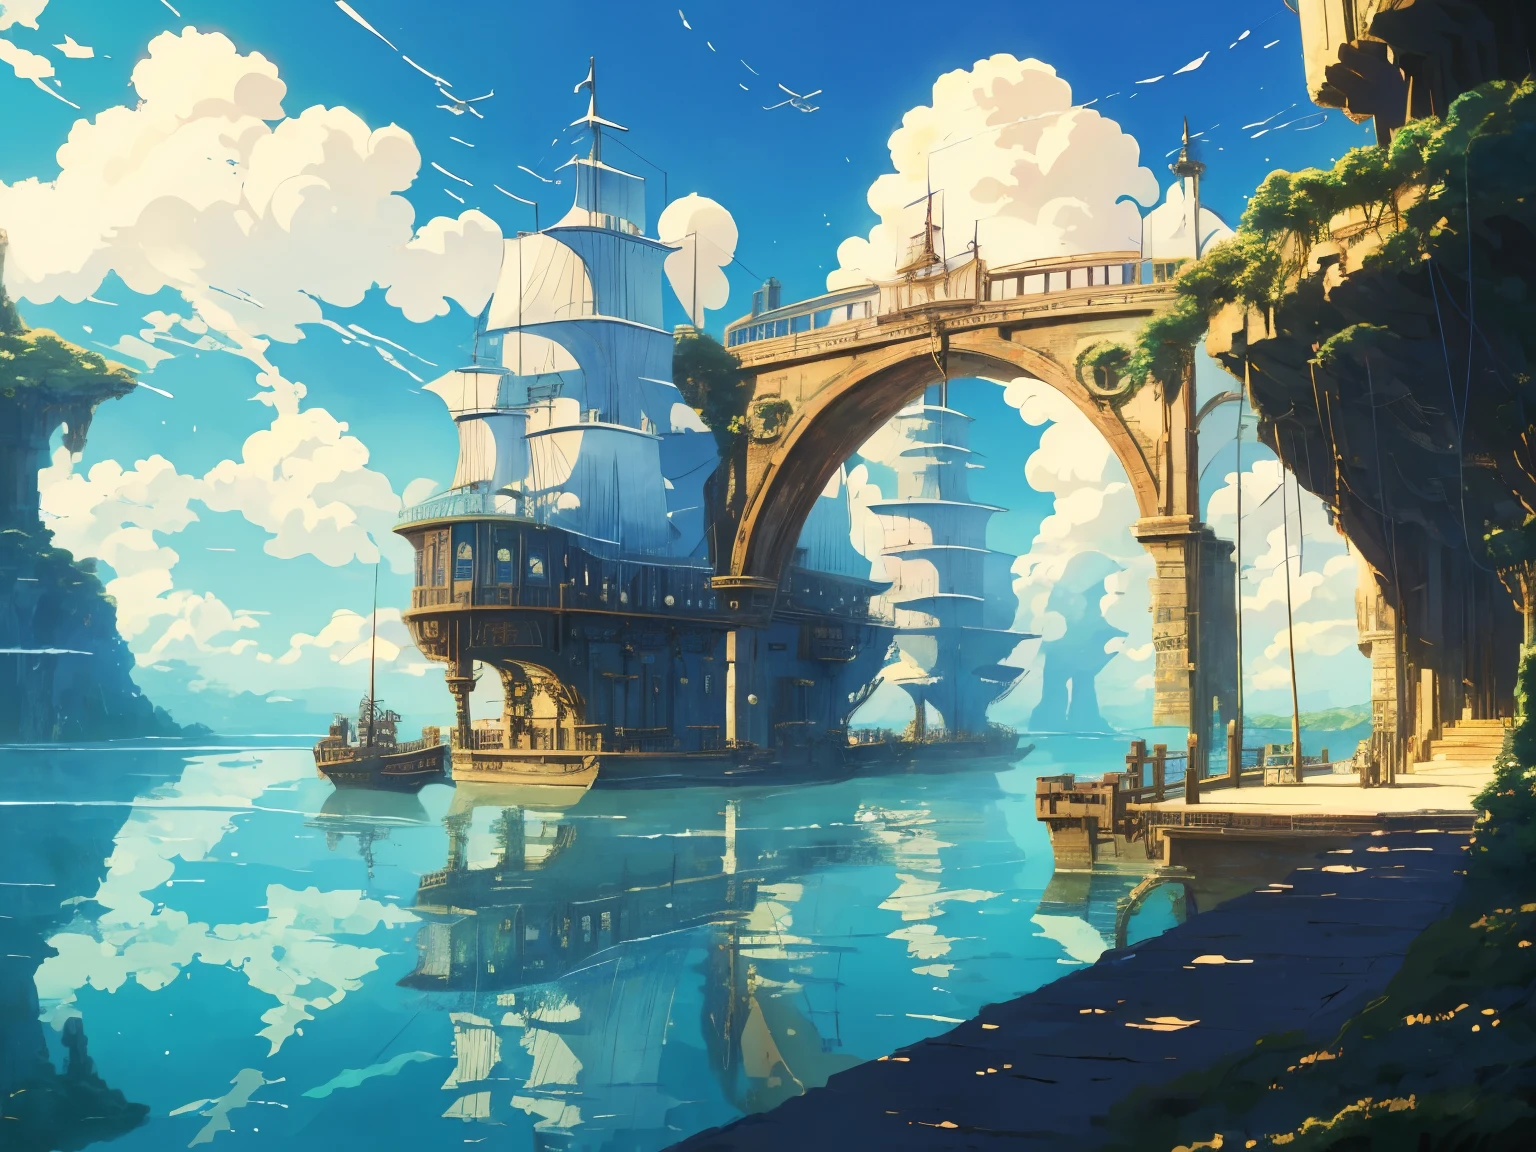 Captura de pantalla en DVD de la película de Studio Ghibli., hermoso interior del puente steampunk junto al mar, nubes en el cielo azul, Diseñado por Hayao Miyazaki., retro anime